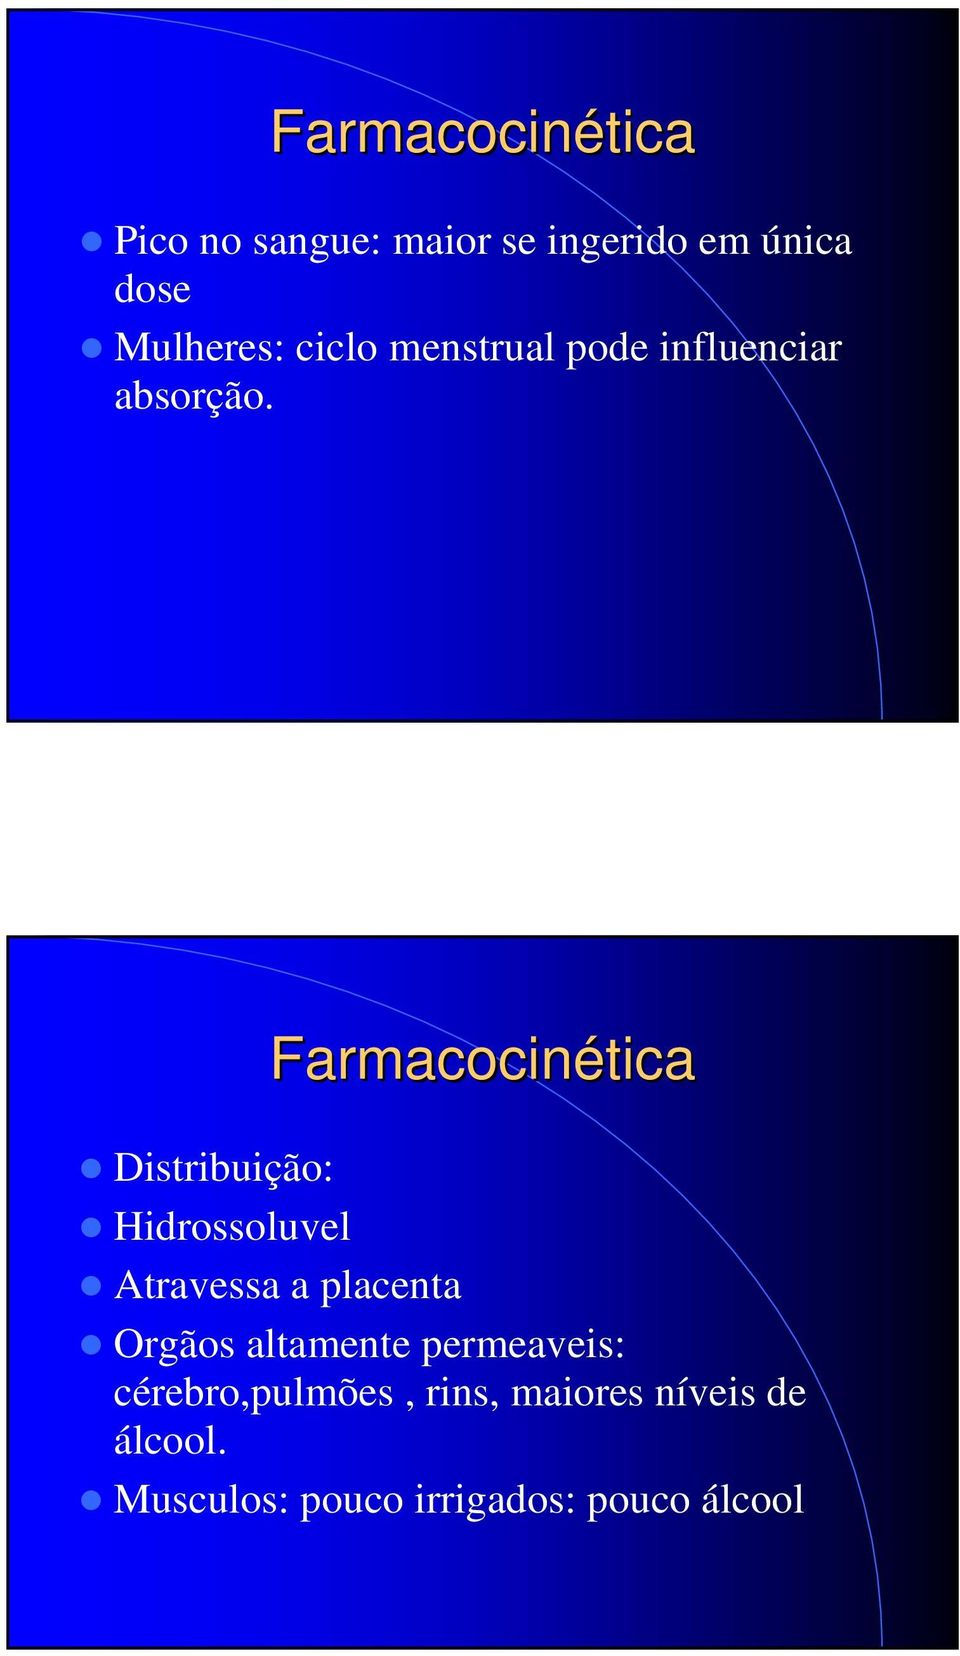 Distribuição: Hidrossoluvel Farmacocinética Atravessa a placenta Orgãos